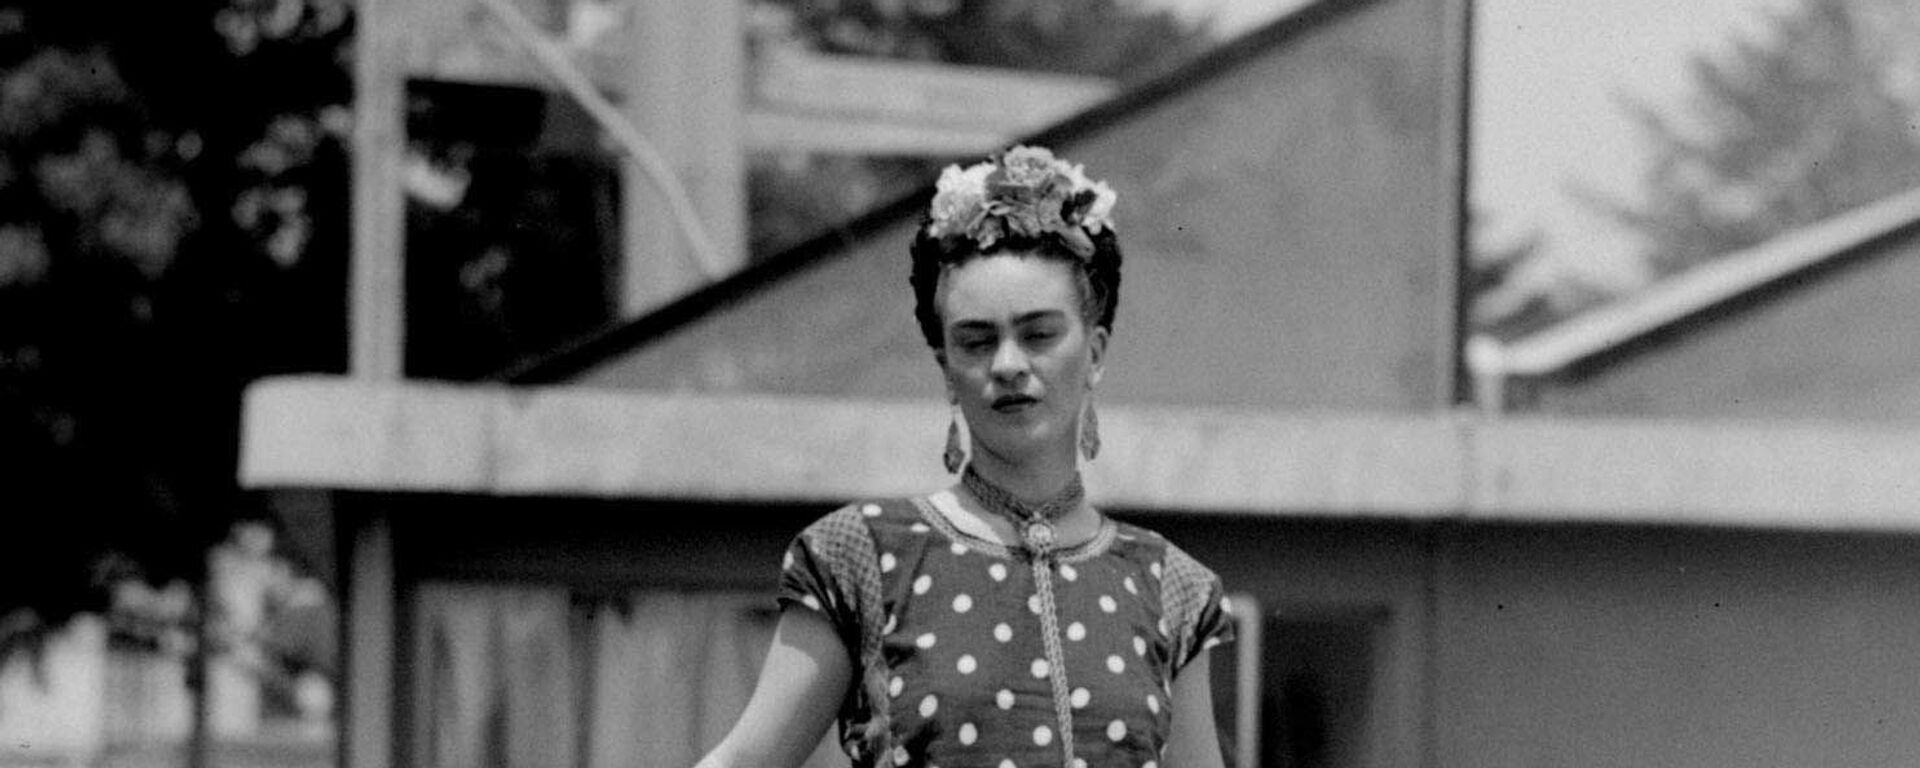 Frida Kahlo, pintora mexicana - Sputnik Mundo, 1920, 03.07.2020